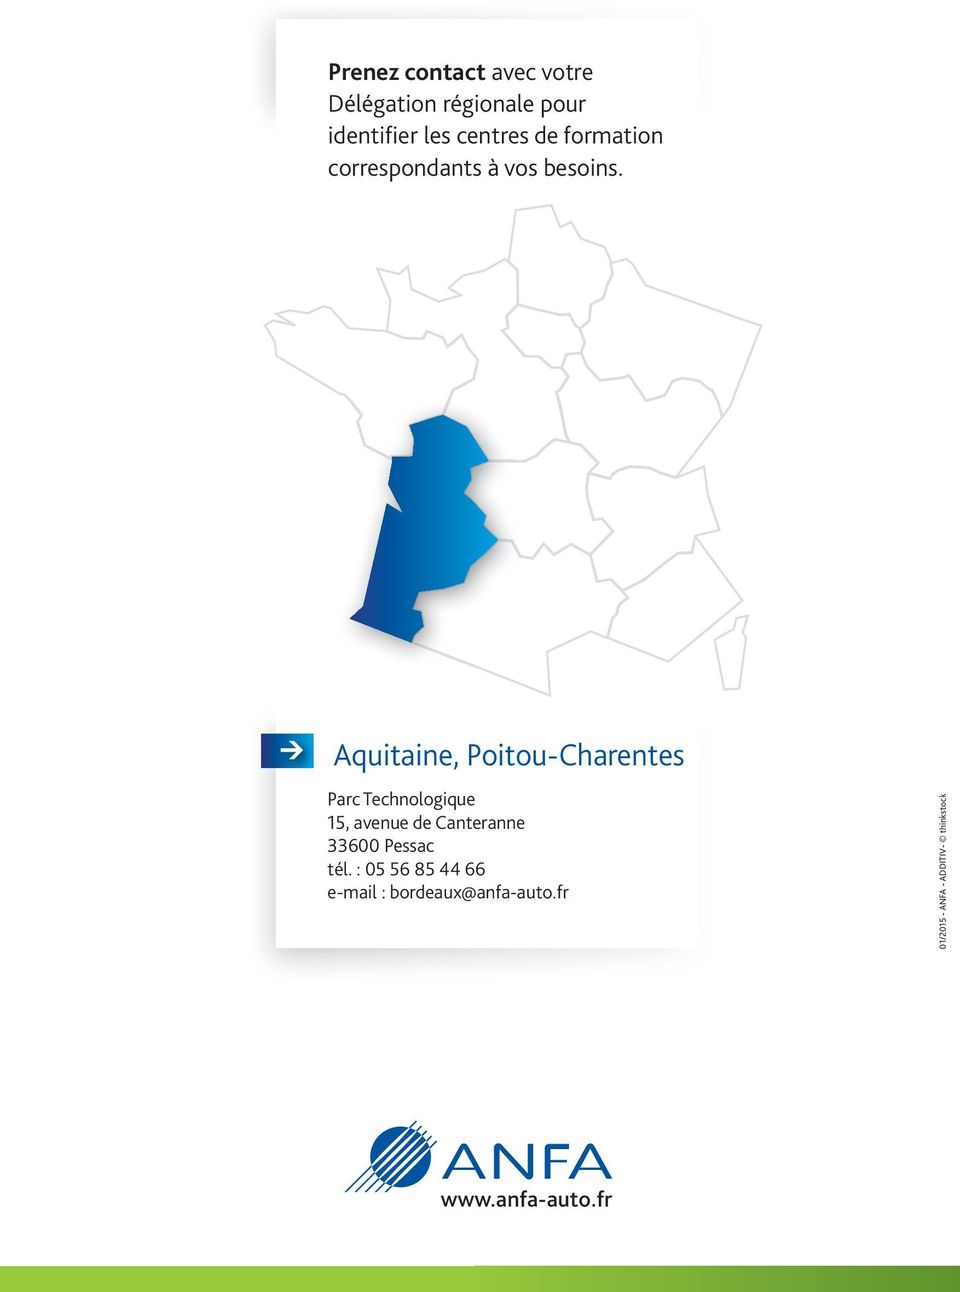 Aquitaine, Poitou-Charentes Parc Technologique 15, avenue de Canteranne 33600